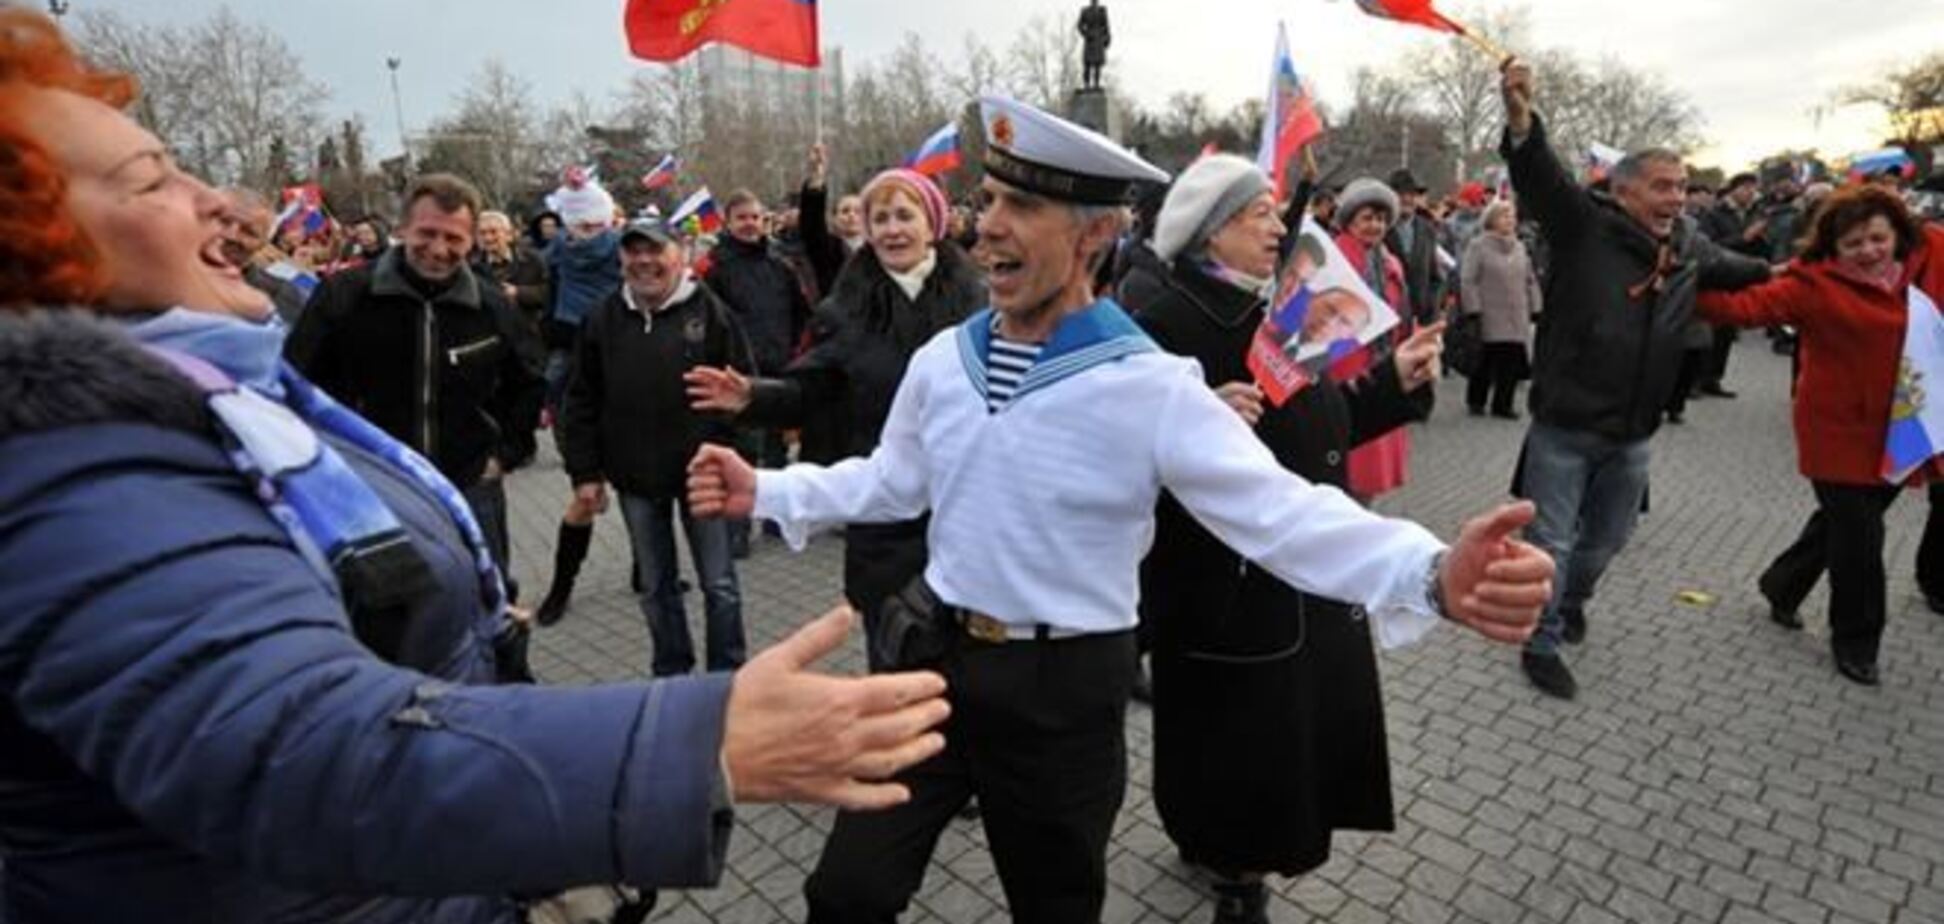 Москвичам выдают флаги РФ для вывешивания на балконах в честь 'возврата' Крыма